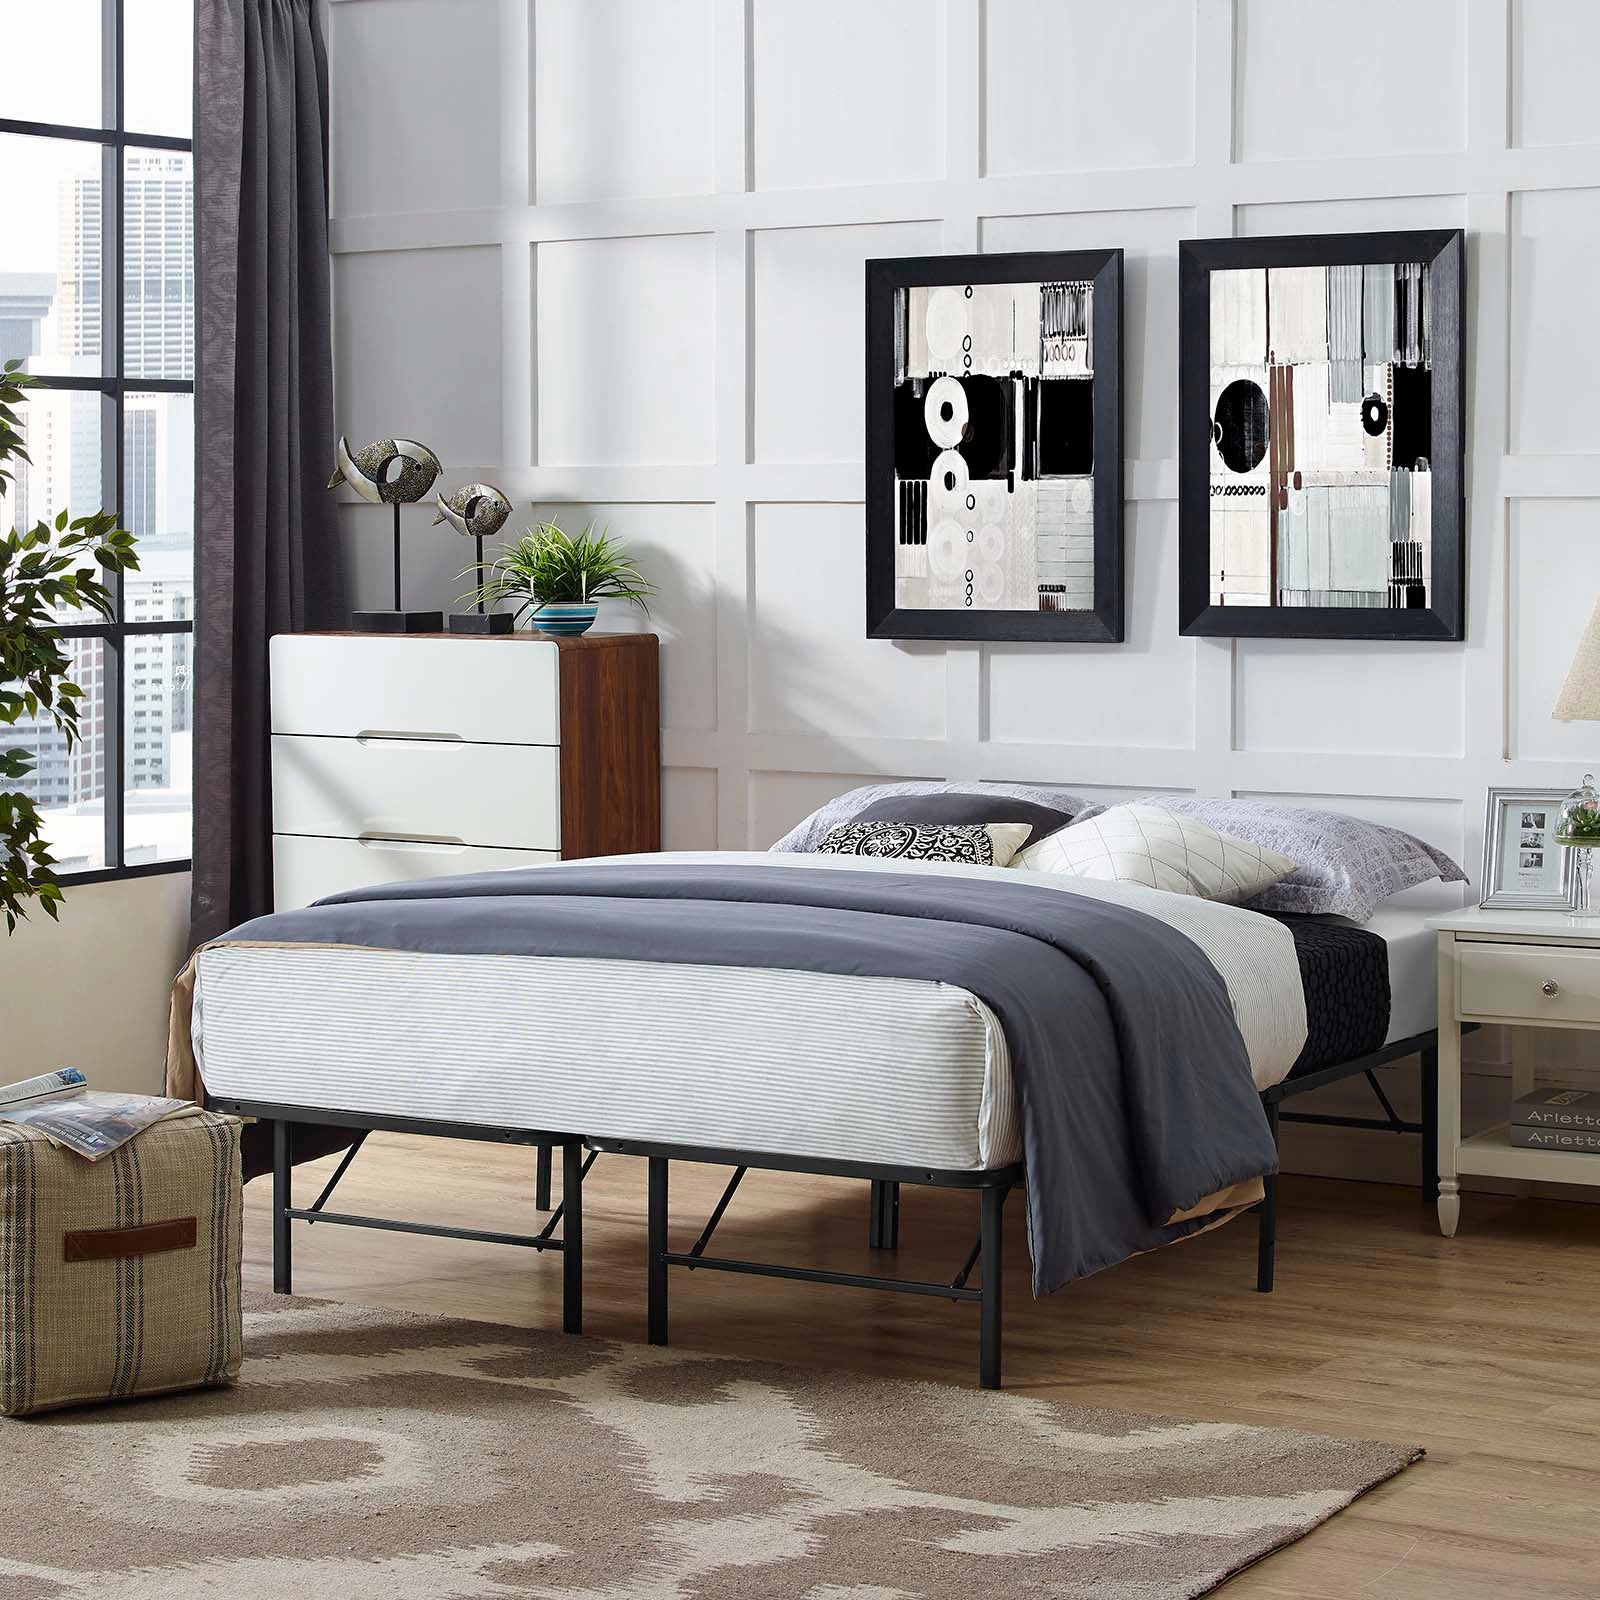 Horizon Full Stainless Steel Bed Frame - East Shore Modern Home Furnishings